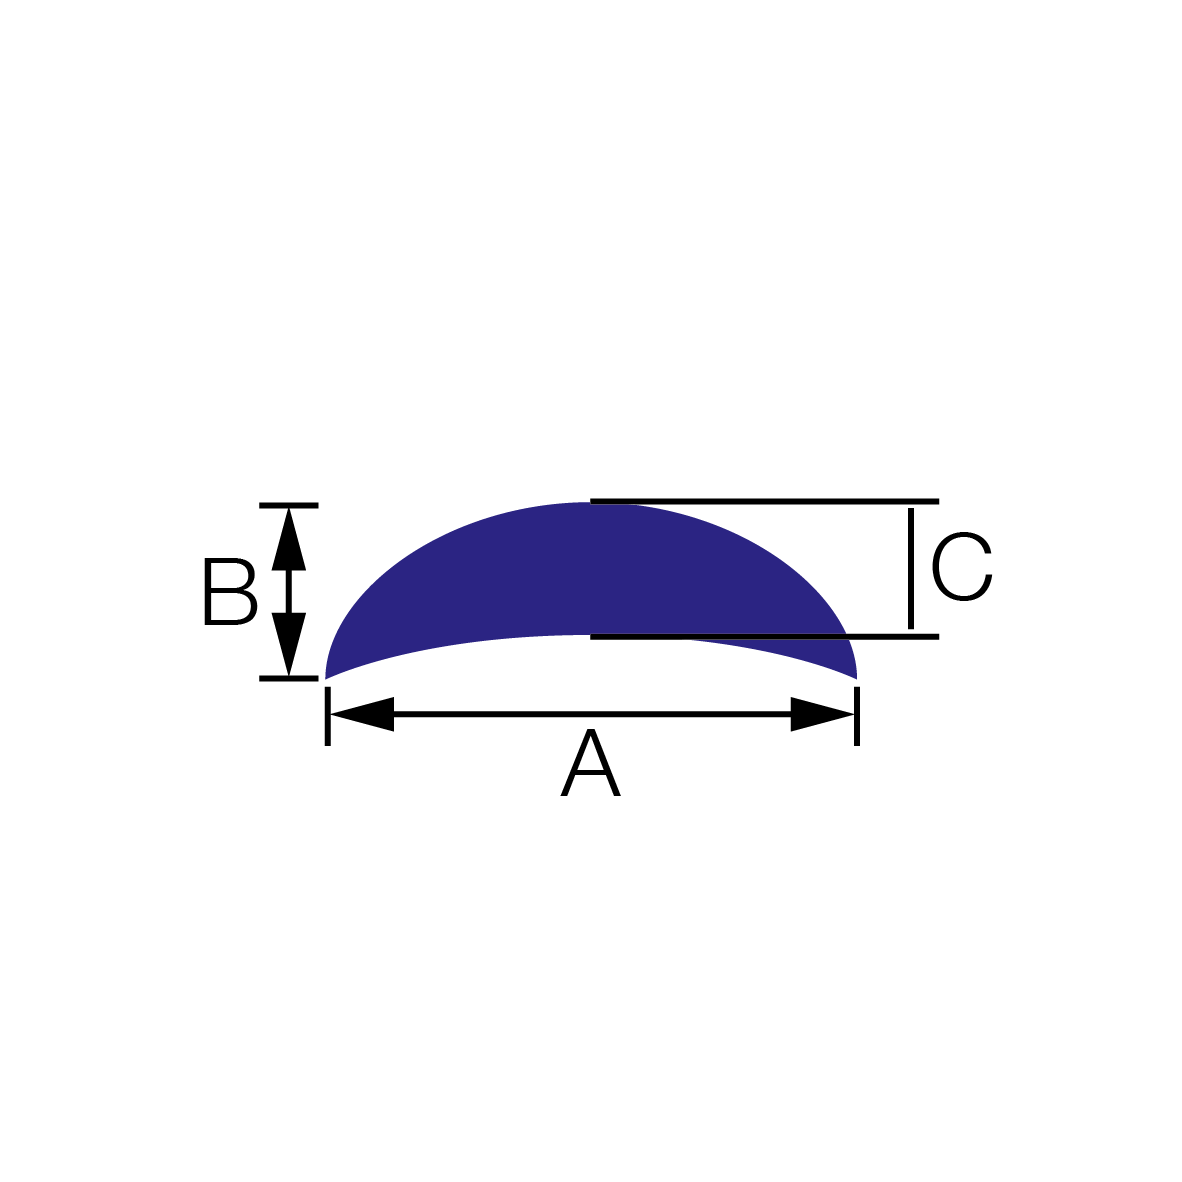 Profile półokrągłe (półksiężyc)